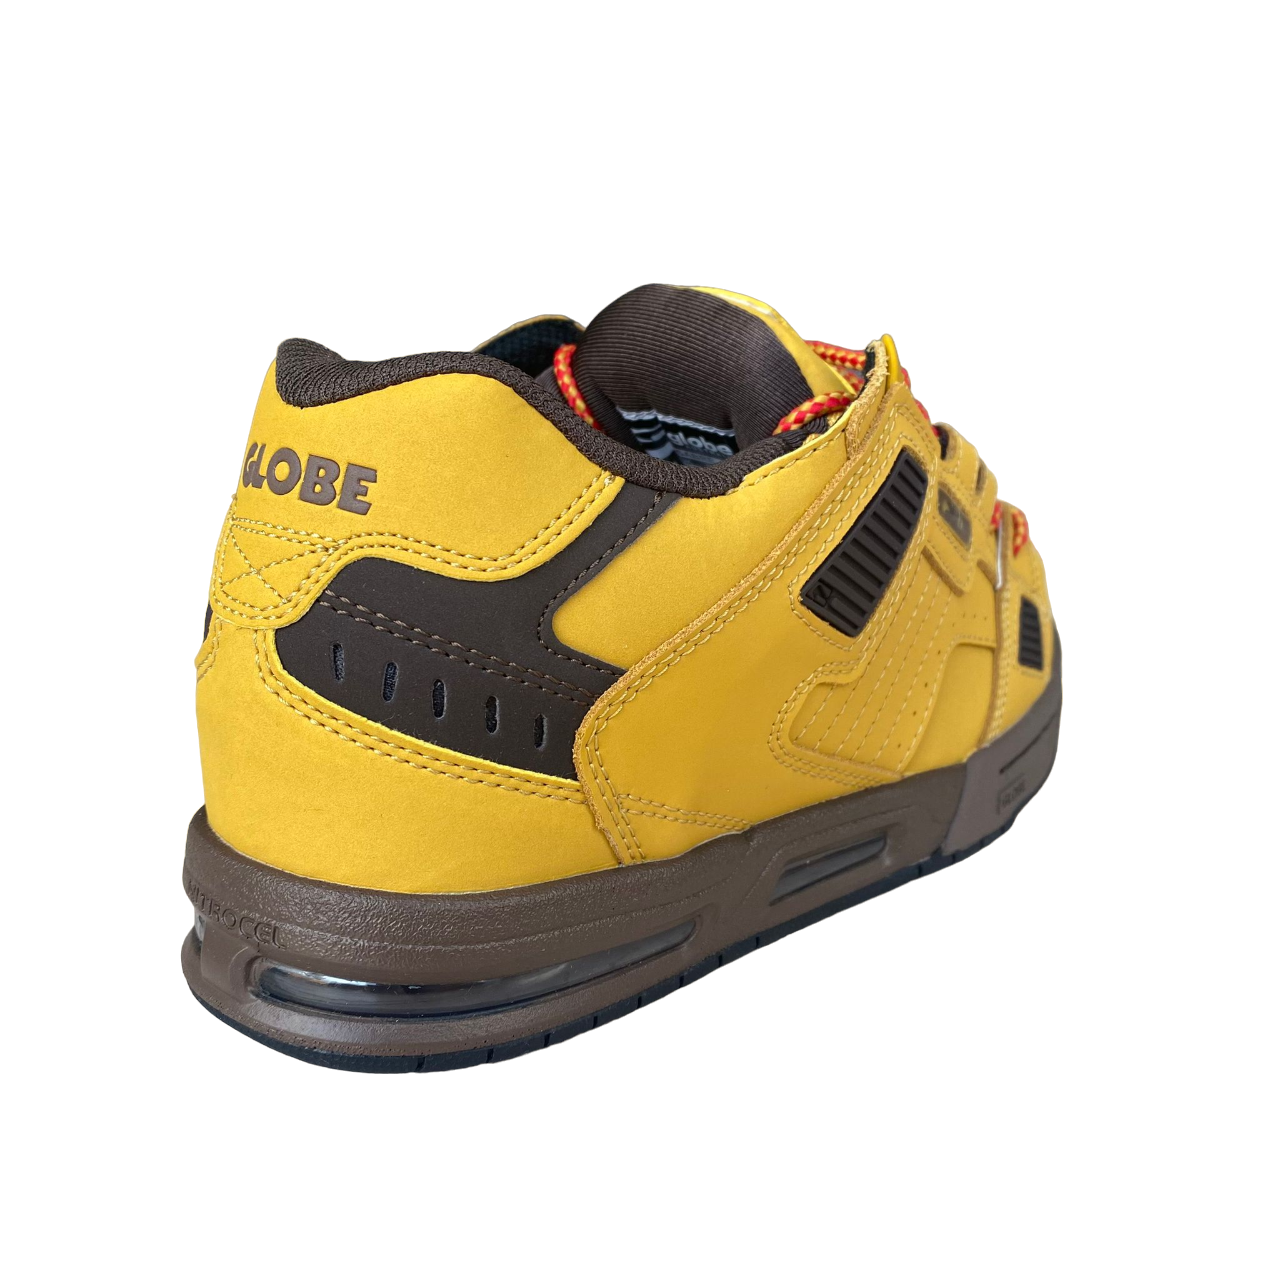 Globe scarpa sneakers da skateboard da uomo Sabre GBSABR 16365 grano-rovere scuro